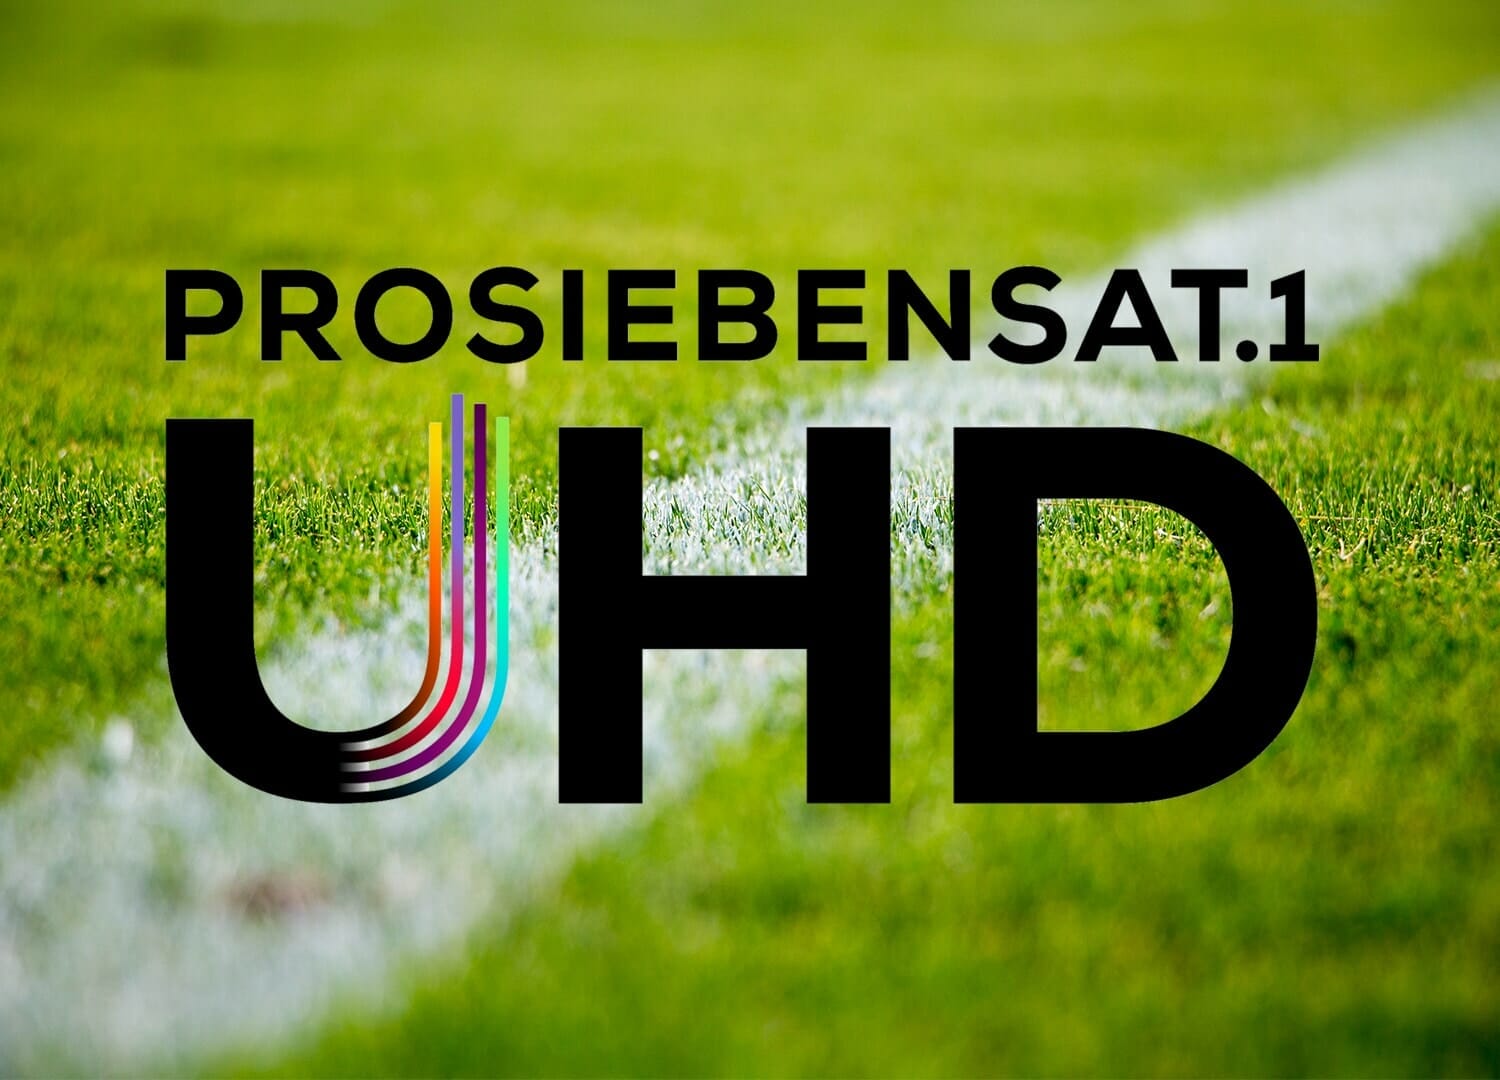 ProSiebenSat.1 UHD geht heute in den Regelbetrieb - Start mit Bundesliga live